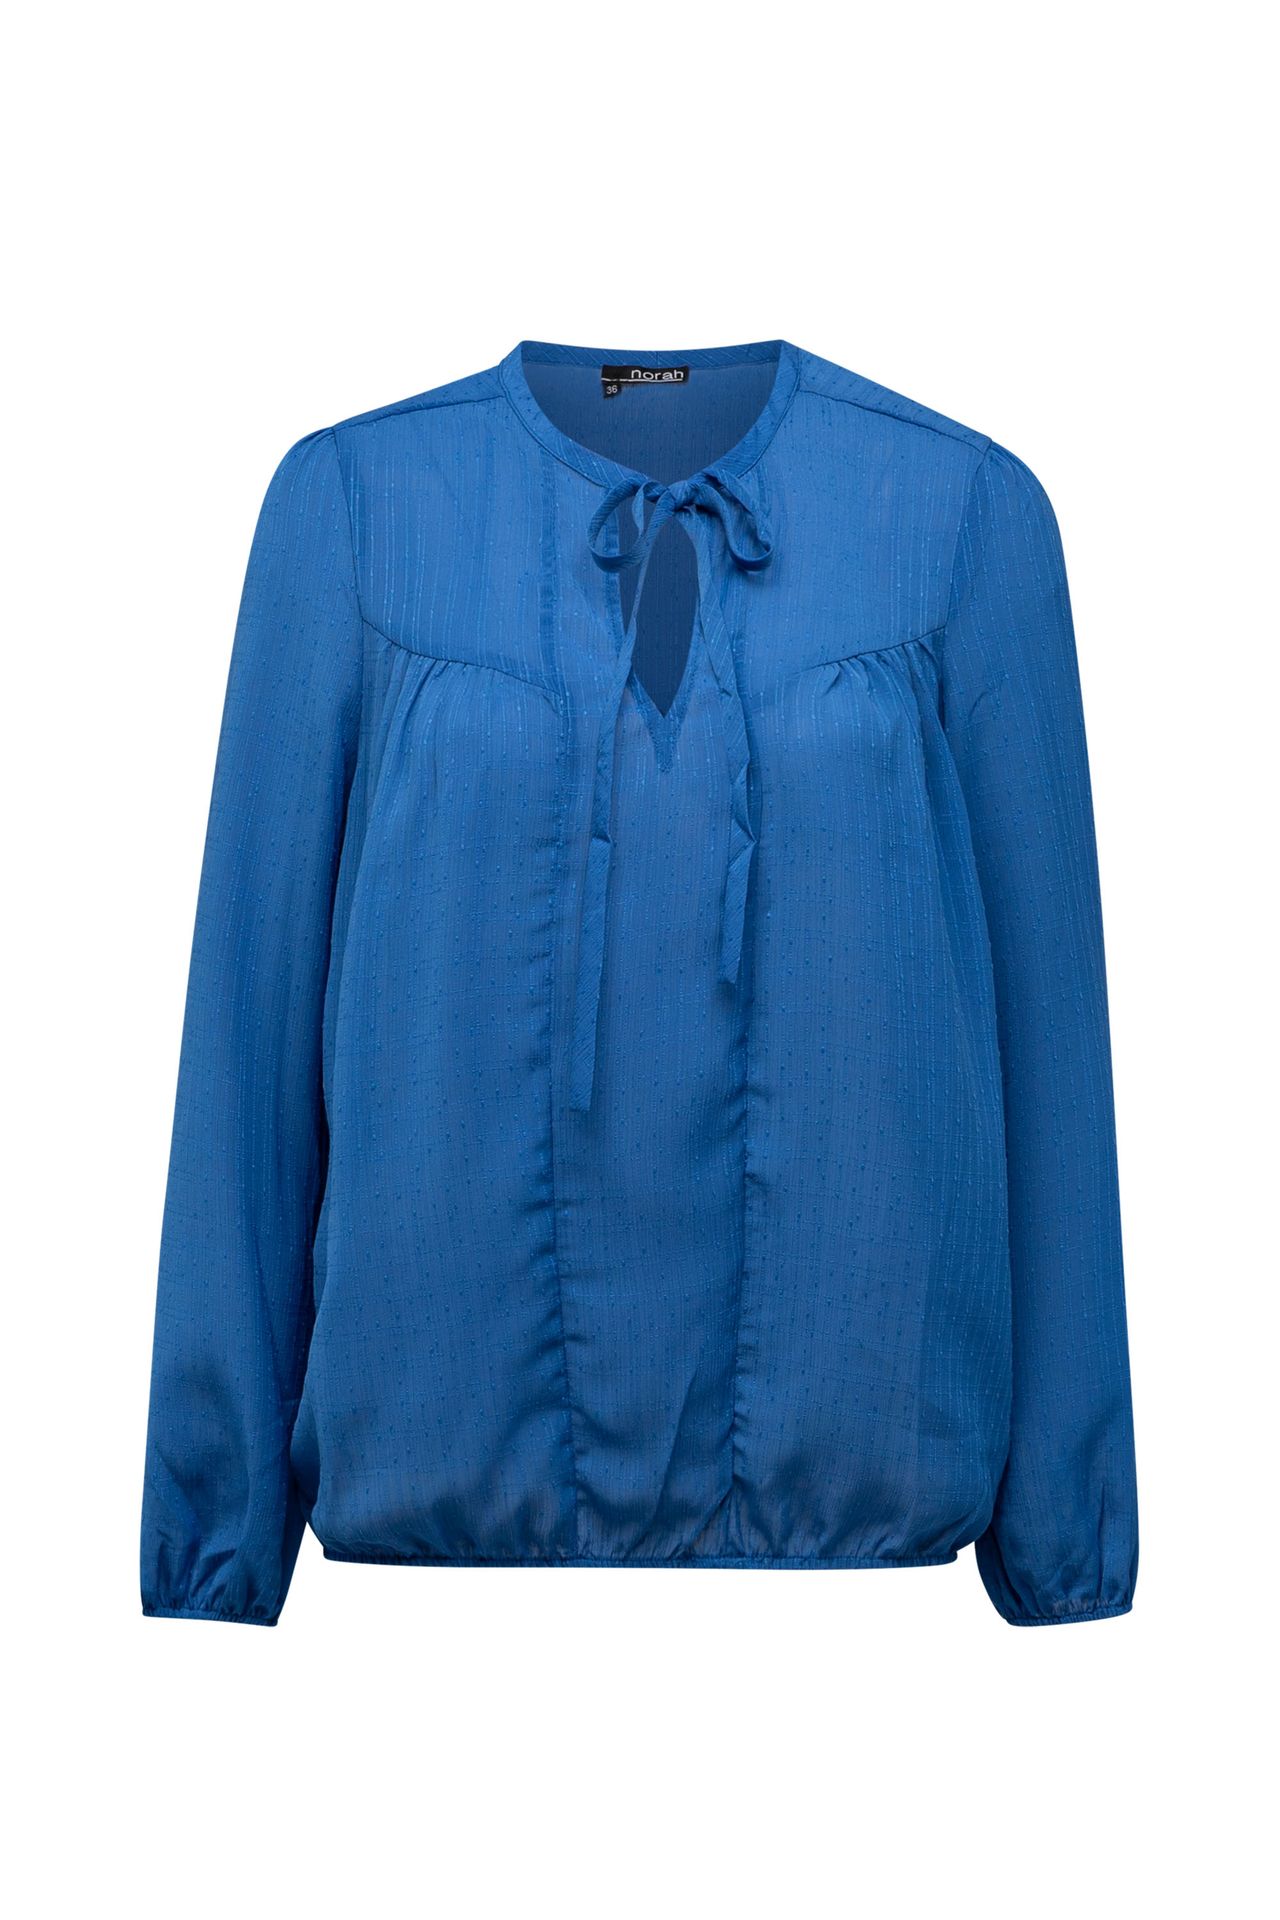 Norah Blauwe blouse met pofmouwen blue 213324-400